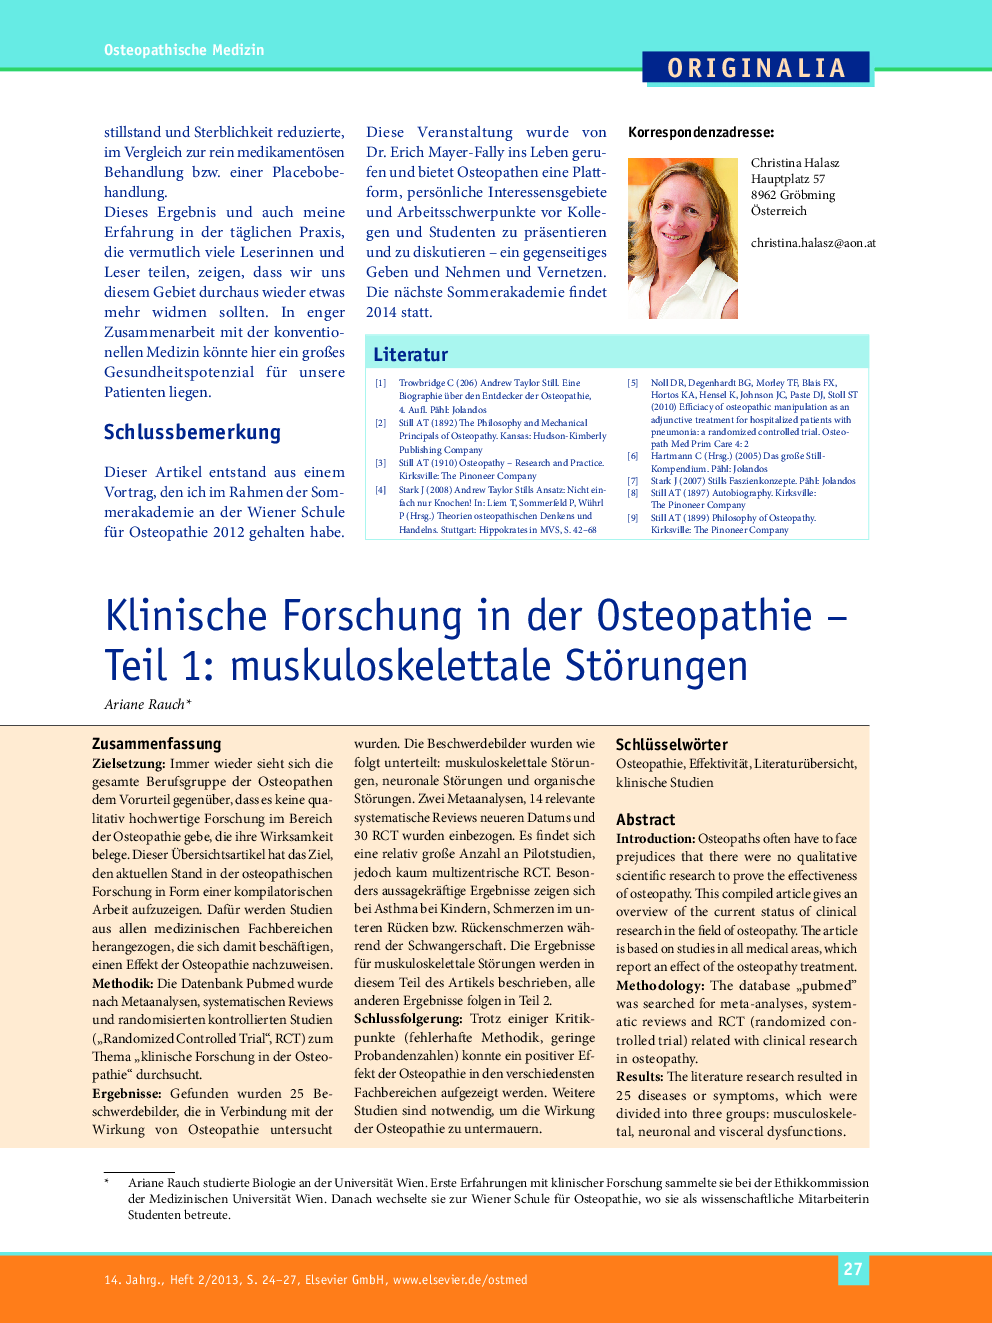 Klinische Forschung in der Osteopathie – Teil 1: muskuloskelettale Störungen